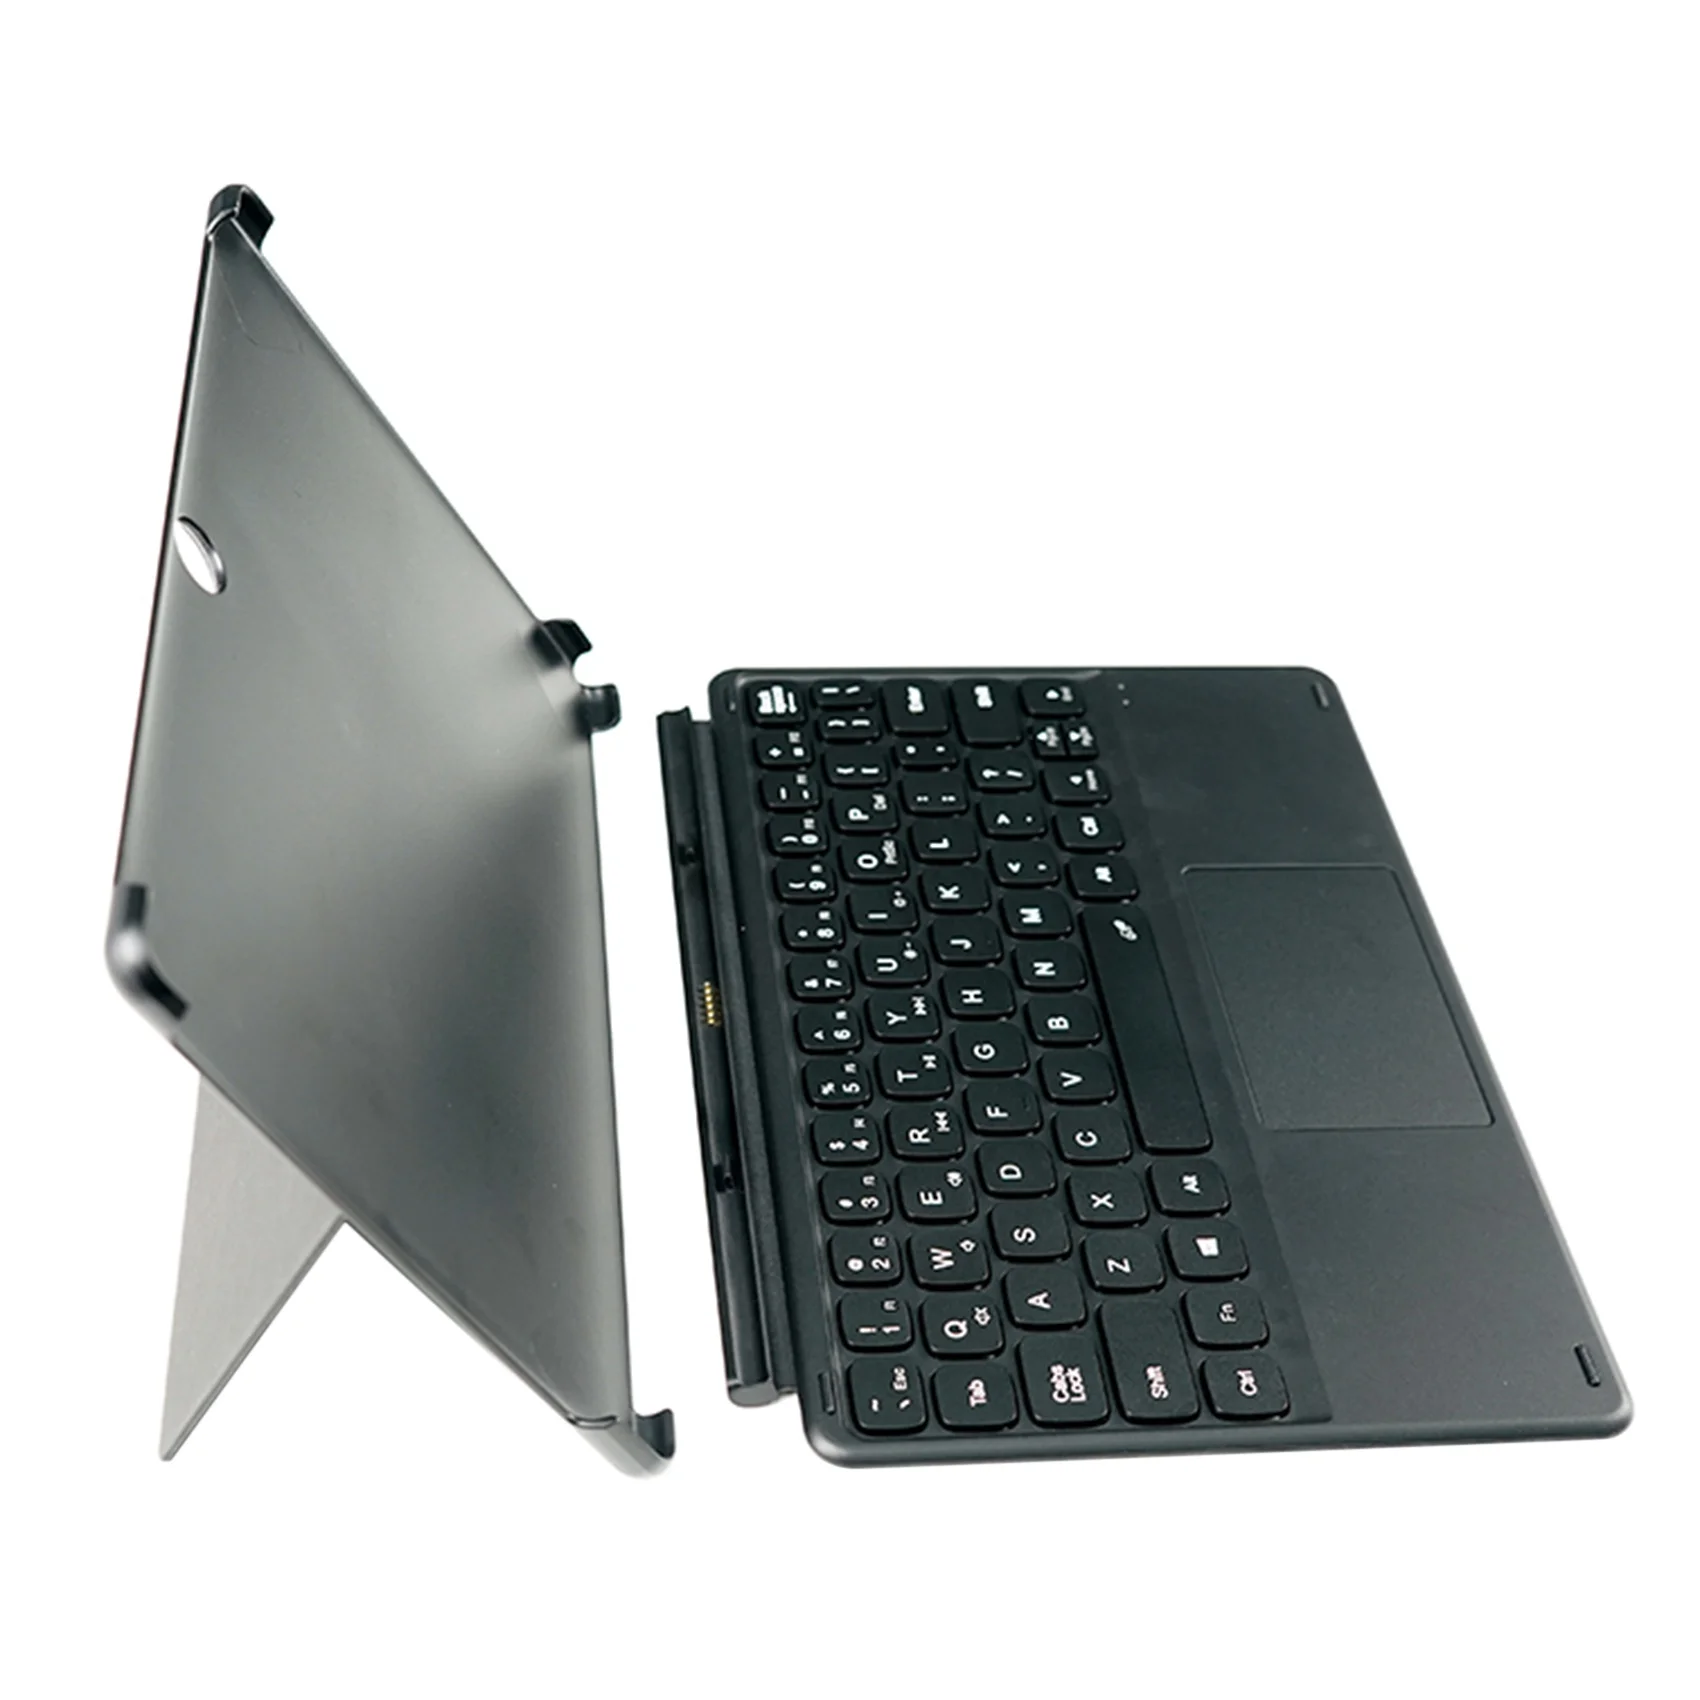 

Клавиатура для планшета CHUWI Hi10 Go 10,1 дюйма, подставка для клавиатуры планшета, чехол с сенсорной панелью, Подключение клавиатуры